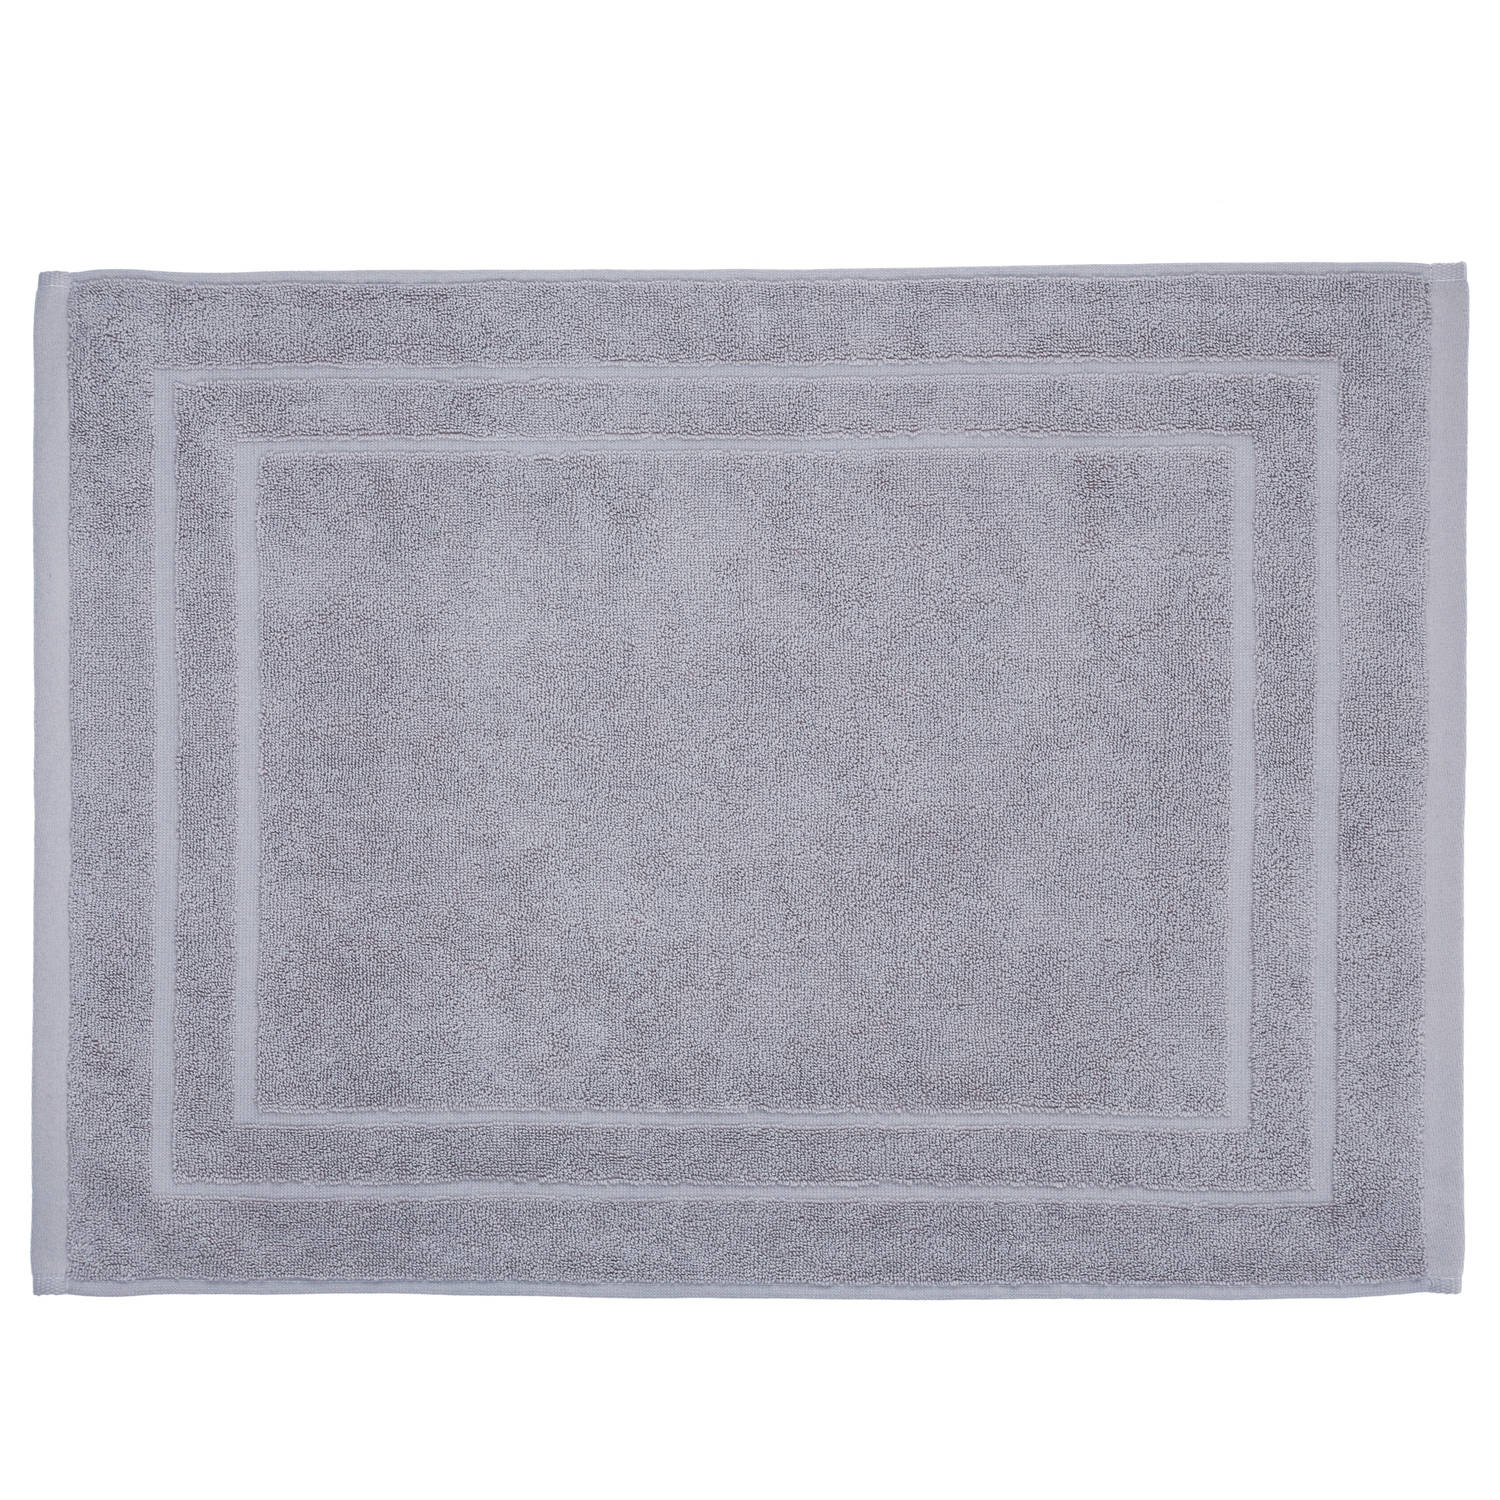 Nauwgezet Oordeel hardop Badkamerkleed/badmat voor op de vloer zilvergrijs 50 x 70 cm - Badmatjes |  Blokker